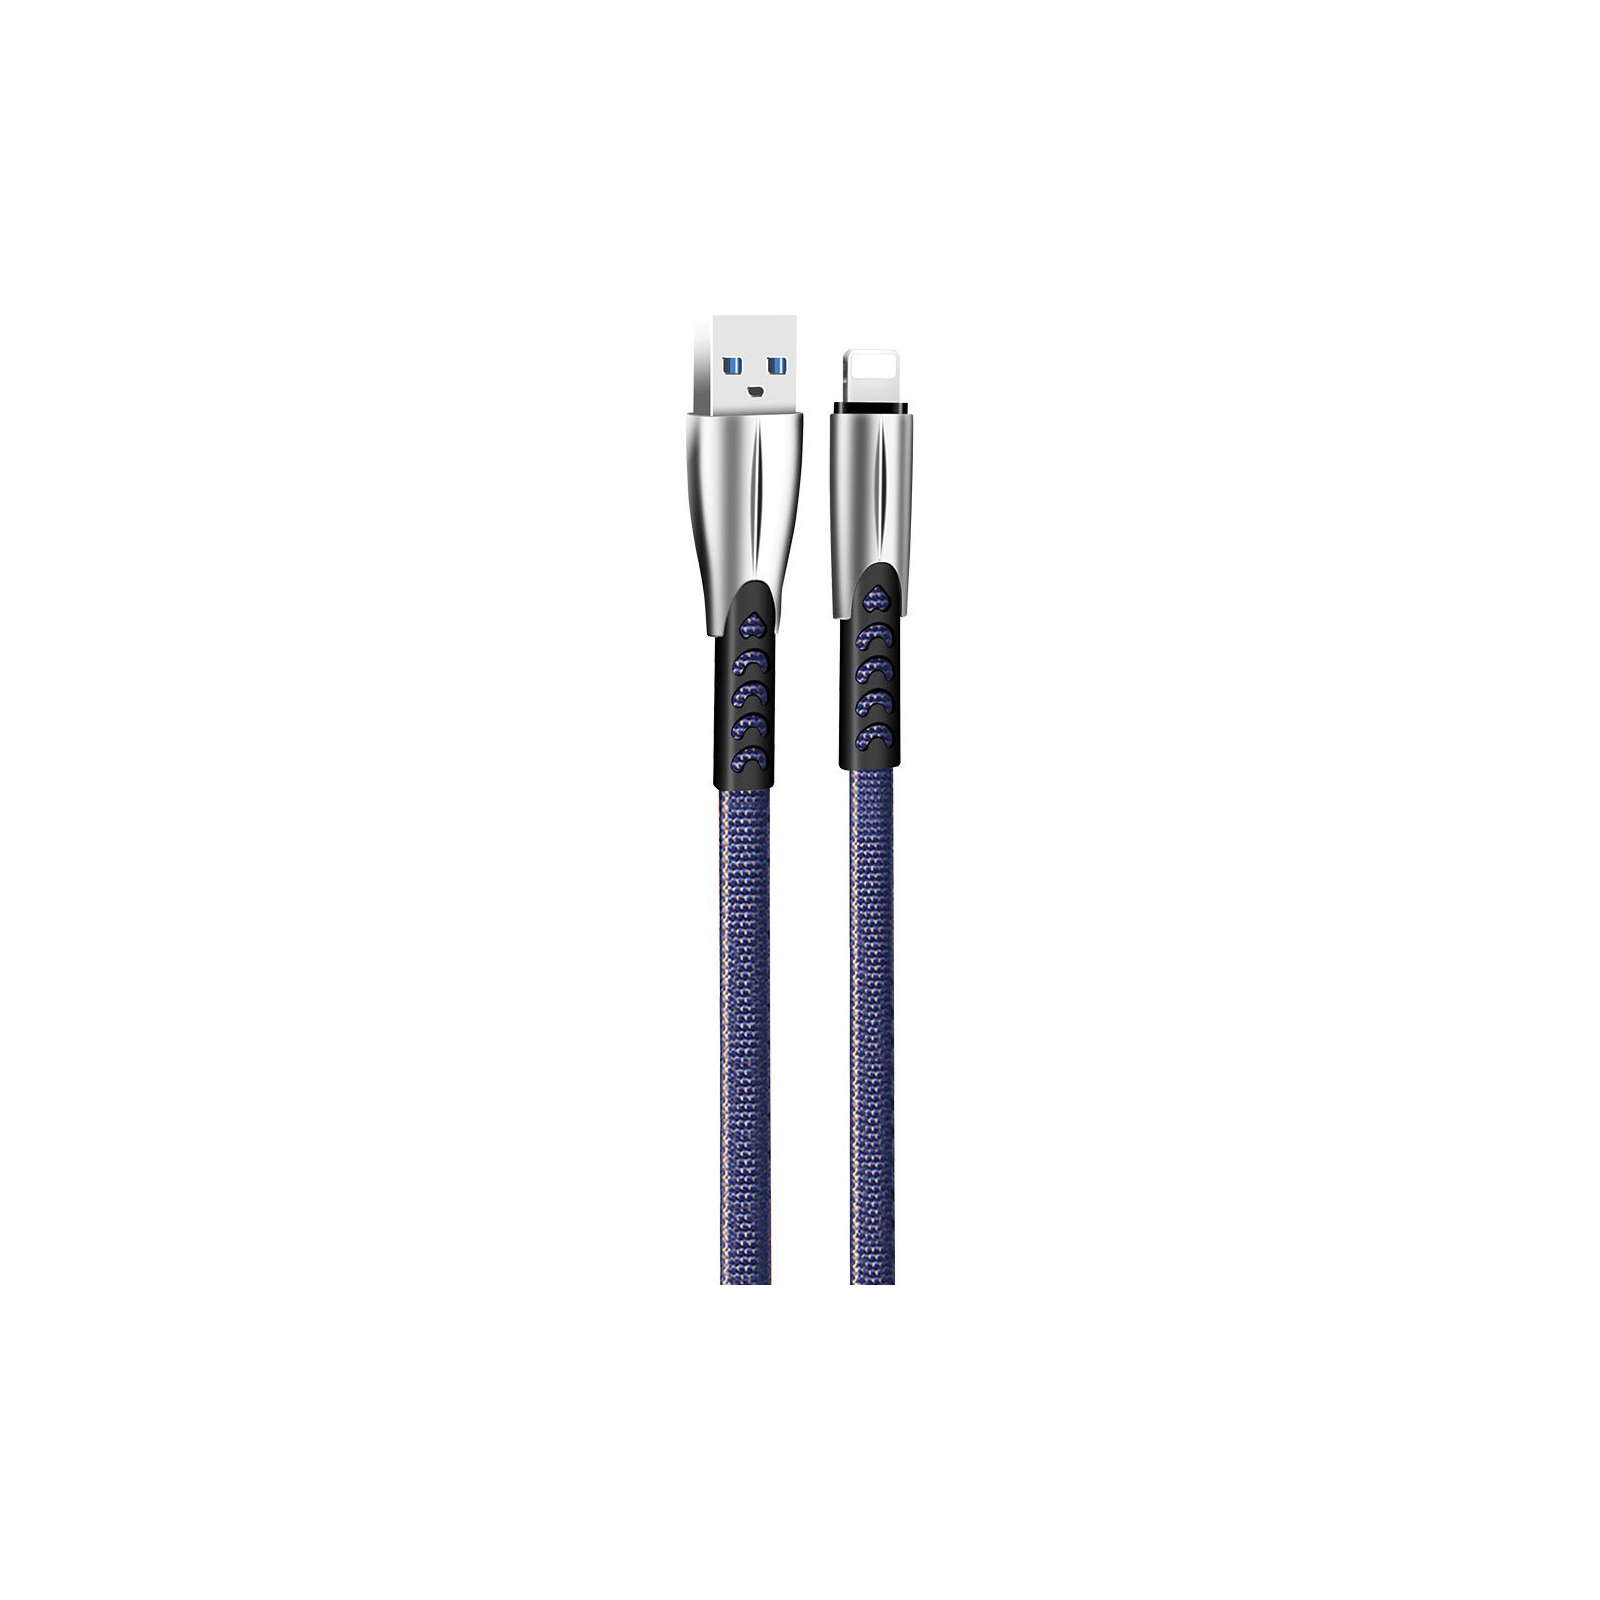 Дата кабель USB 2.0 AM to Lightning 1.0m zinc alloy red ColorWay (CW-CBUL010-RD) изображение 2